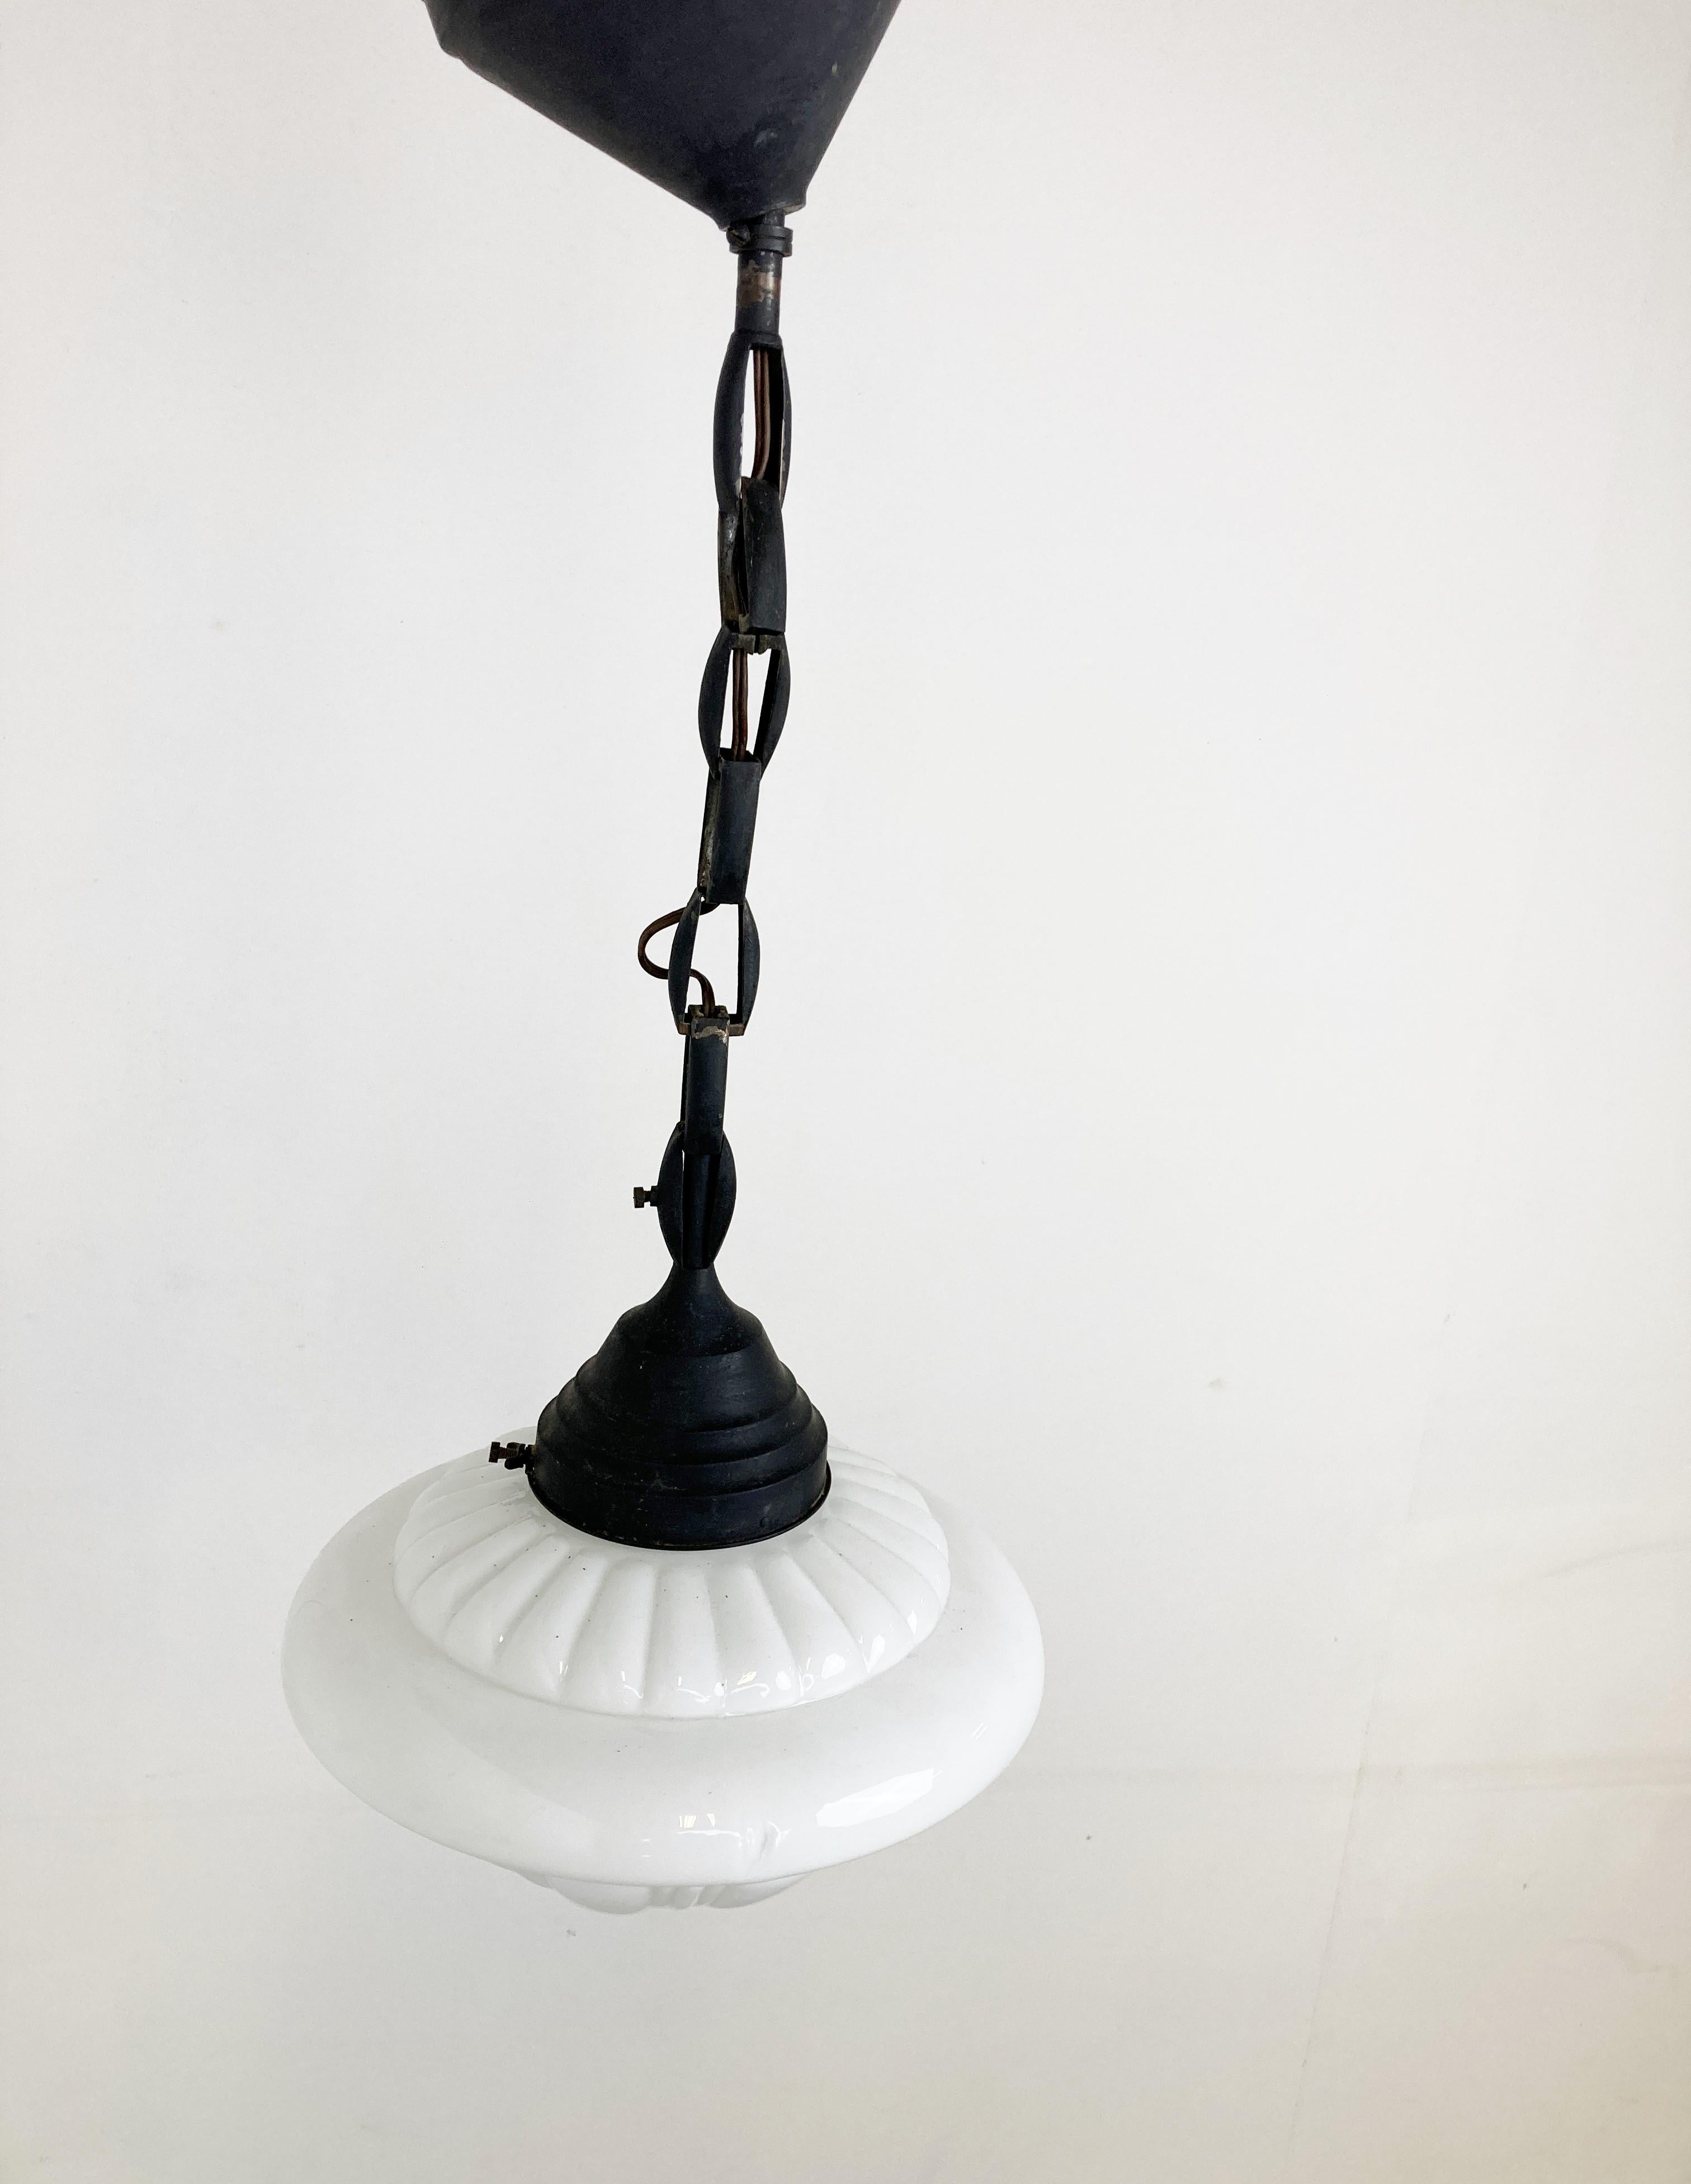 Antike Art-Deco-Hängeleuchte für den Flur.

Diese Lampe ist sehr typisch für die Art-Deco-Ära und wurde häufig in Fluren, Büros oder größeren öffentlichen Räumen aufgehängt.

Die Lampe hat die originale Kupferkette und Schirmhalterung mit